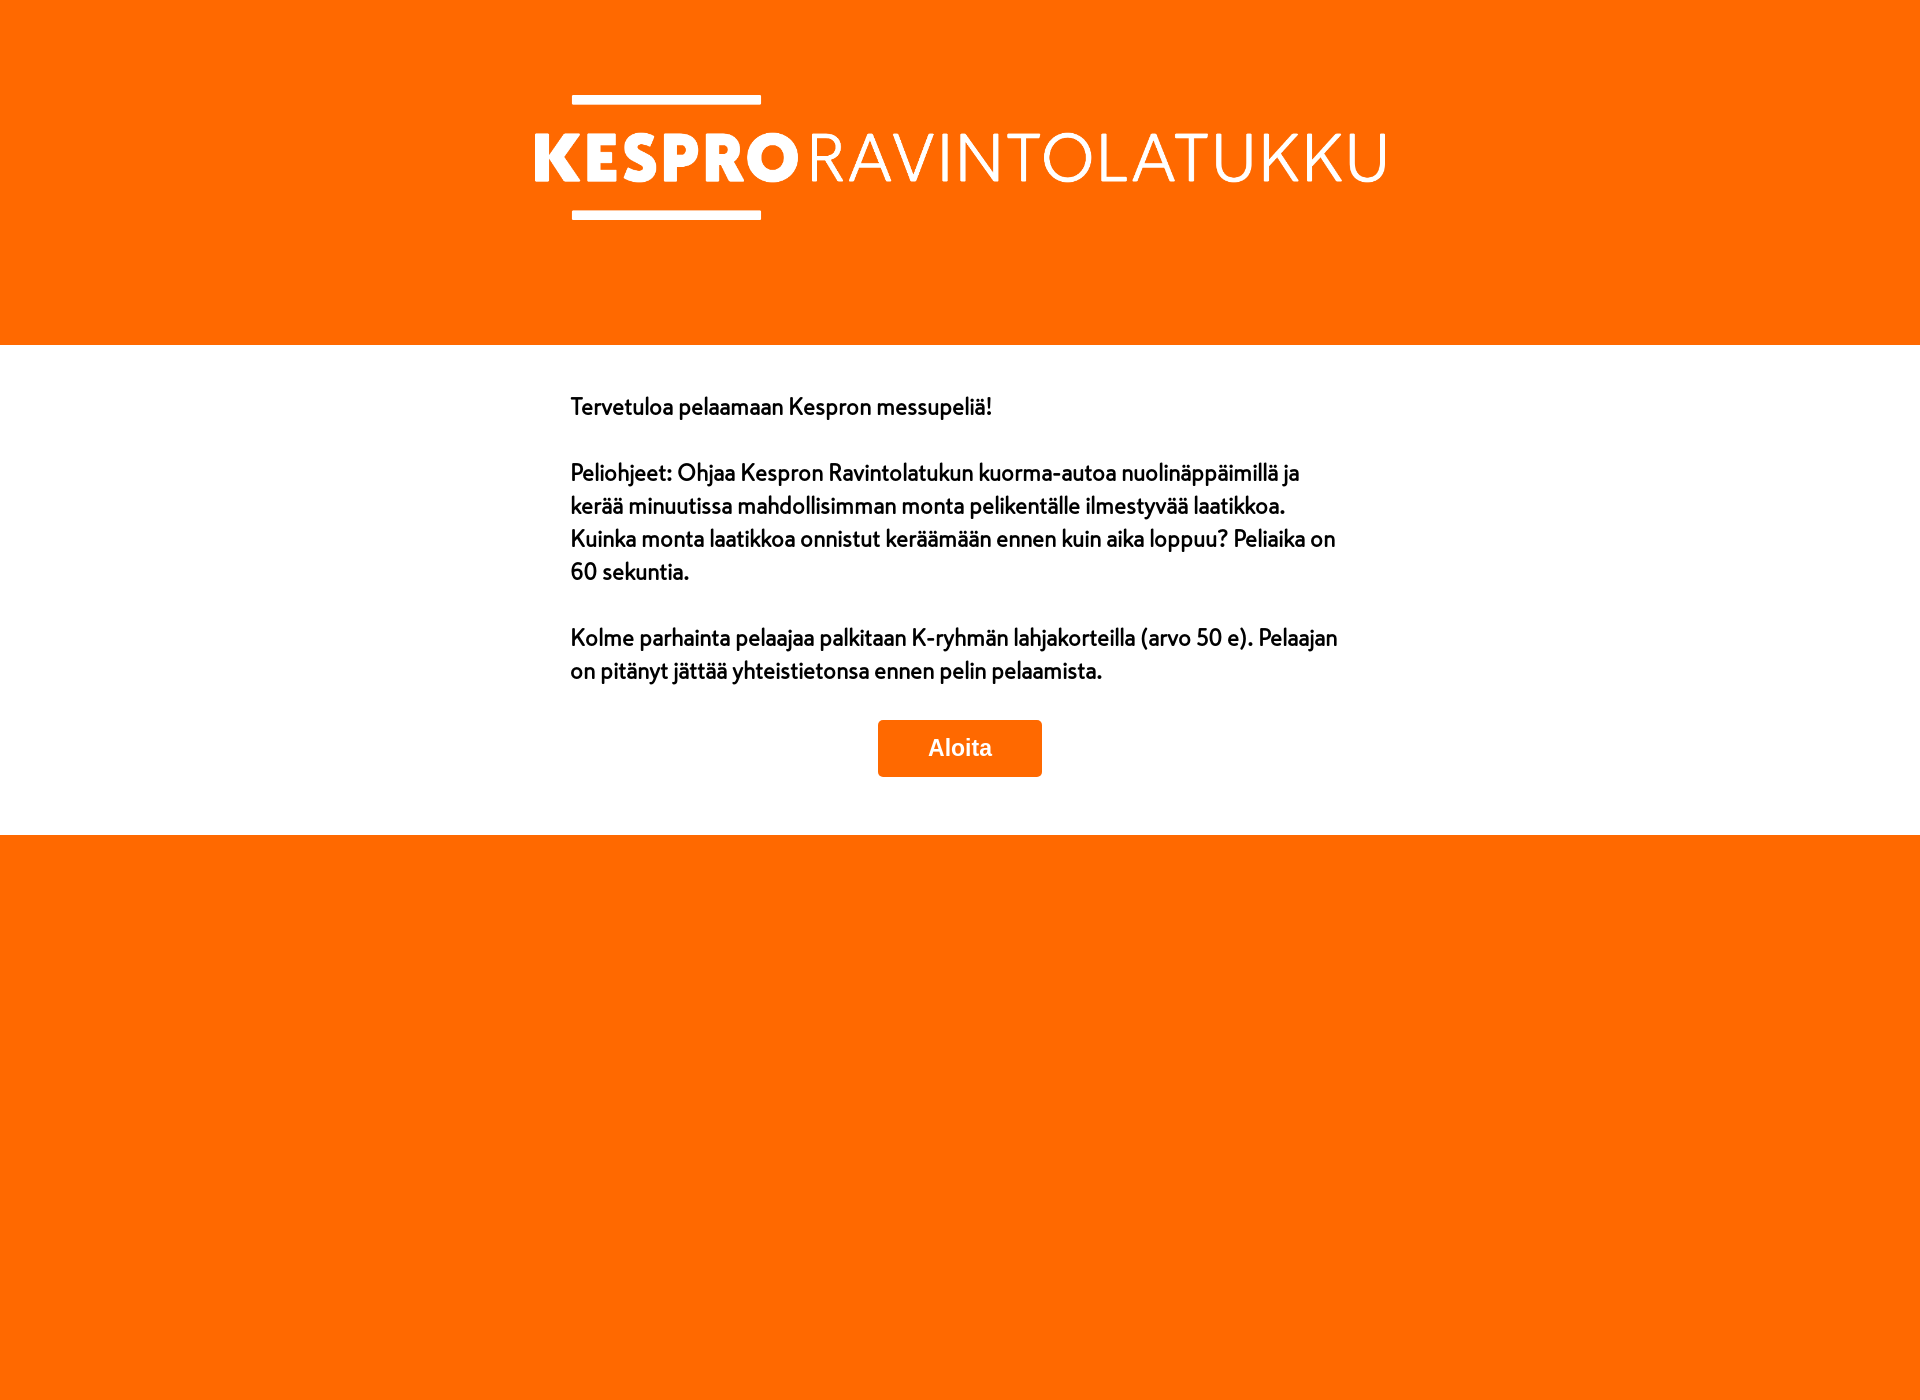 Näyttökuva kespropeli.fi